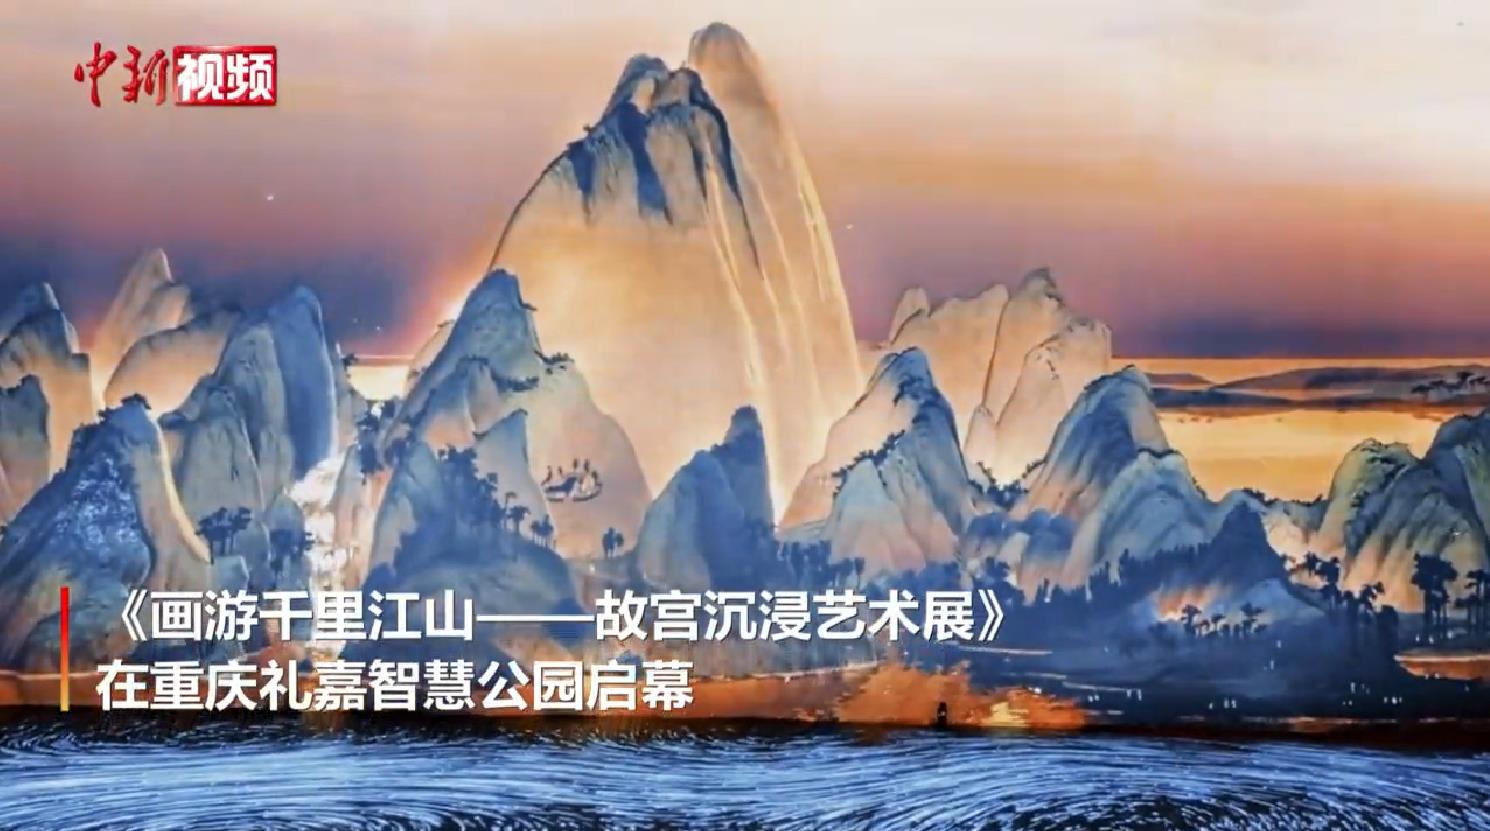 国宝动起来《画游千里江山——故宫沉浸艺术展》在重庆启幕